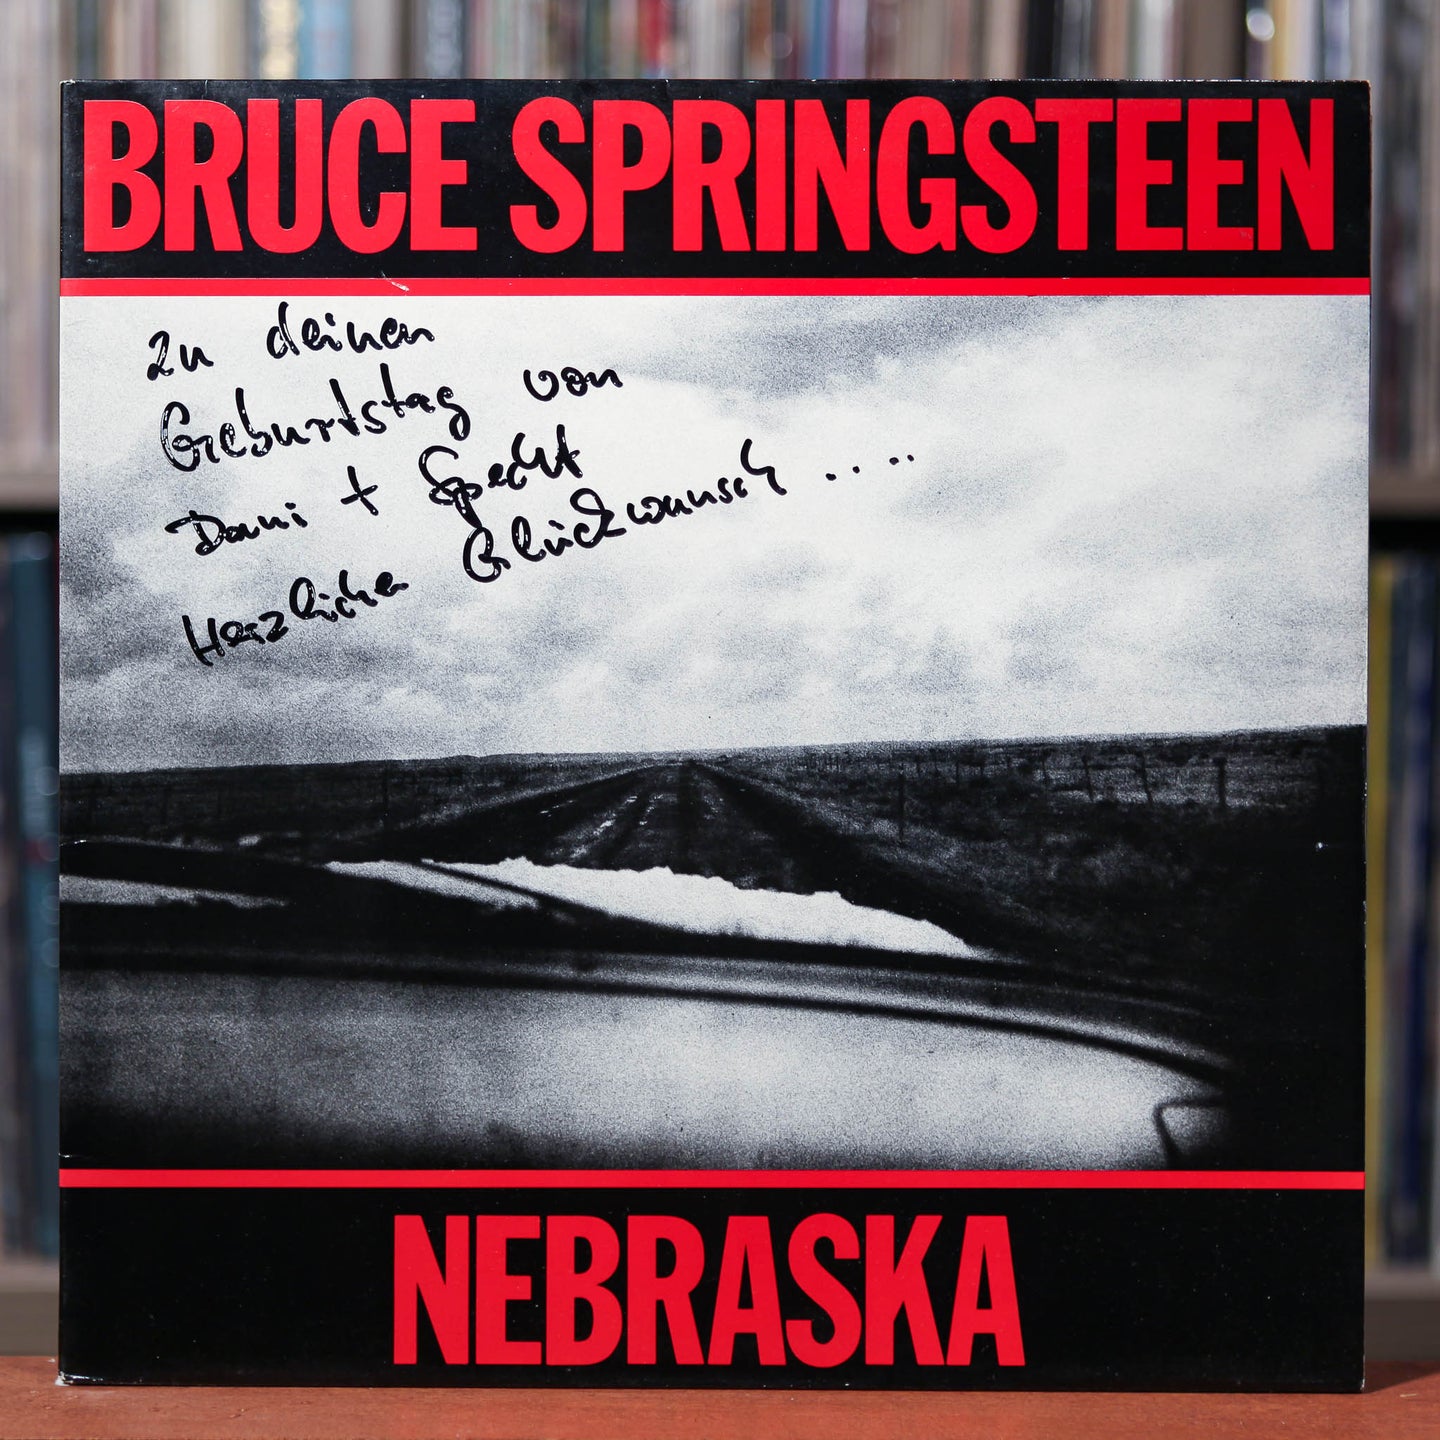 Bruce Springsteen - Nebraska -  UK Import Gatefold - 1982 CBS, VG+/VG+